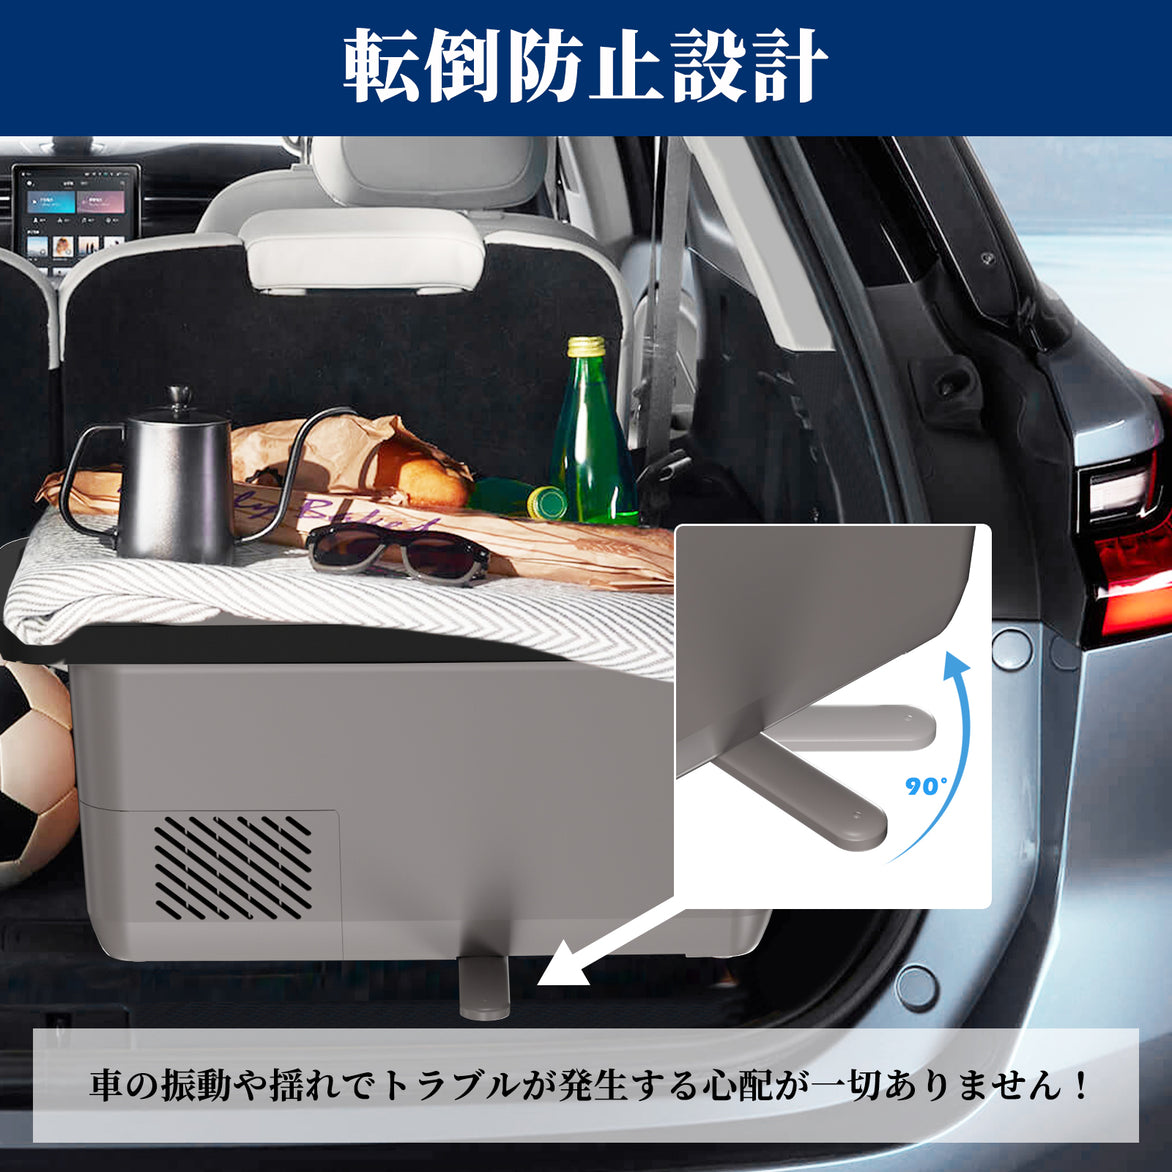 【大容量26L】ポータブル冷蔵庫 車載用冷蔵庫 急速冷凍 車中泊 キャンプ